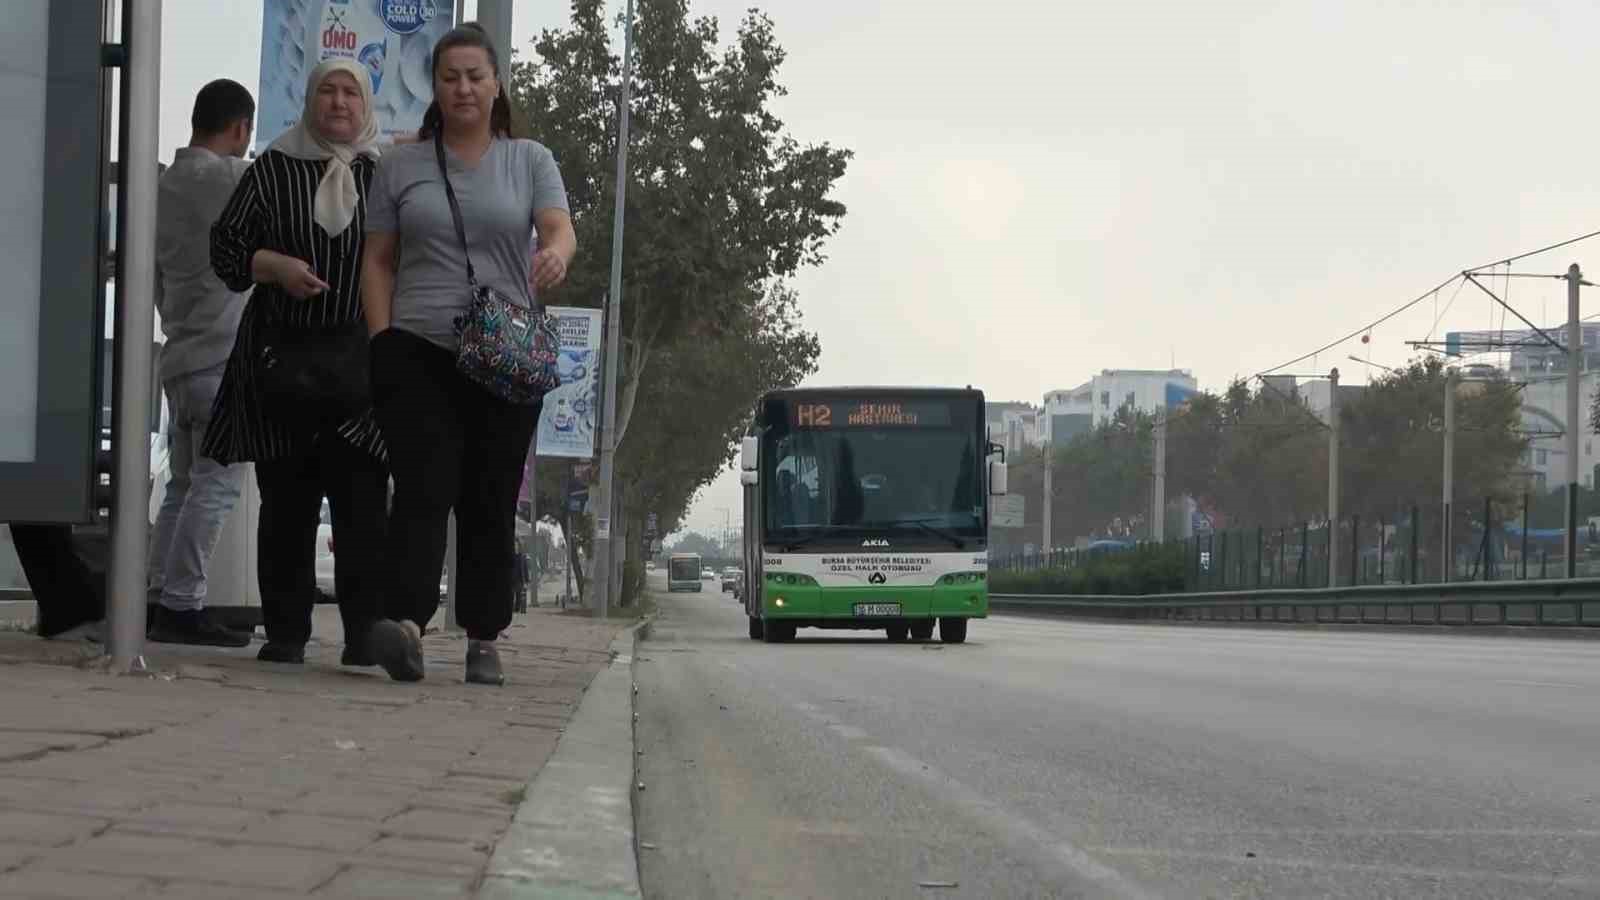 Halk otobüsü şoförünün kadın yolcuların konuşmasından psikolojisi bozuldu